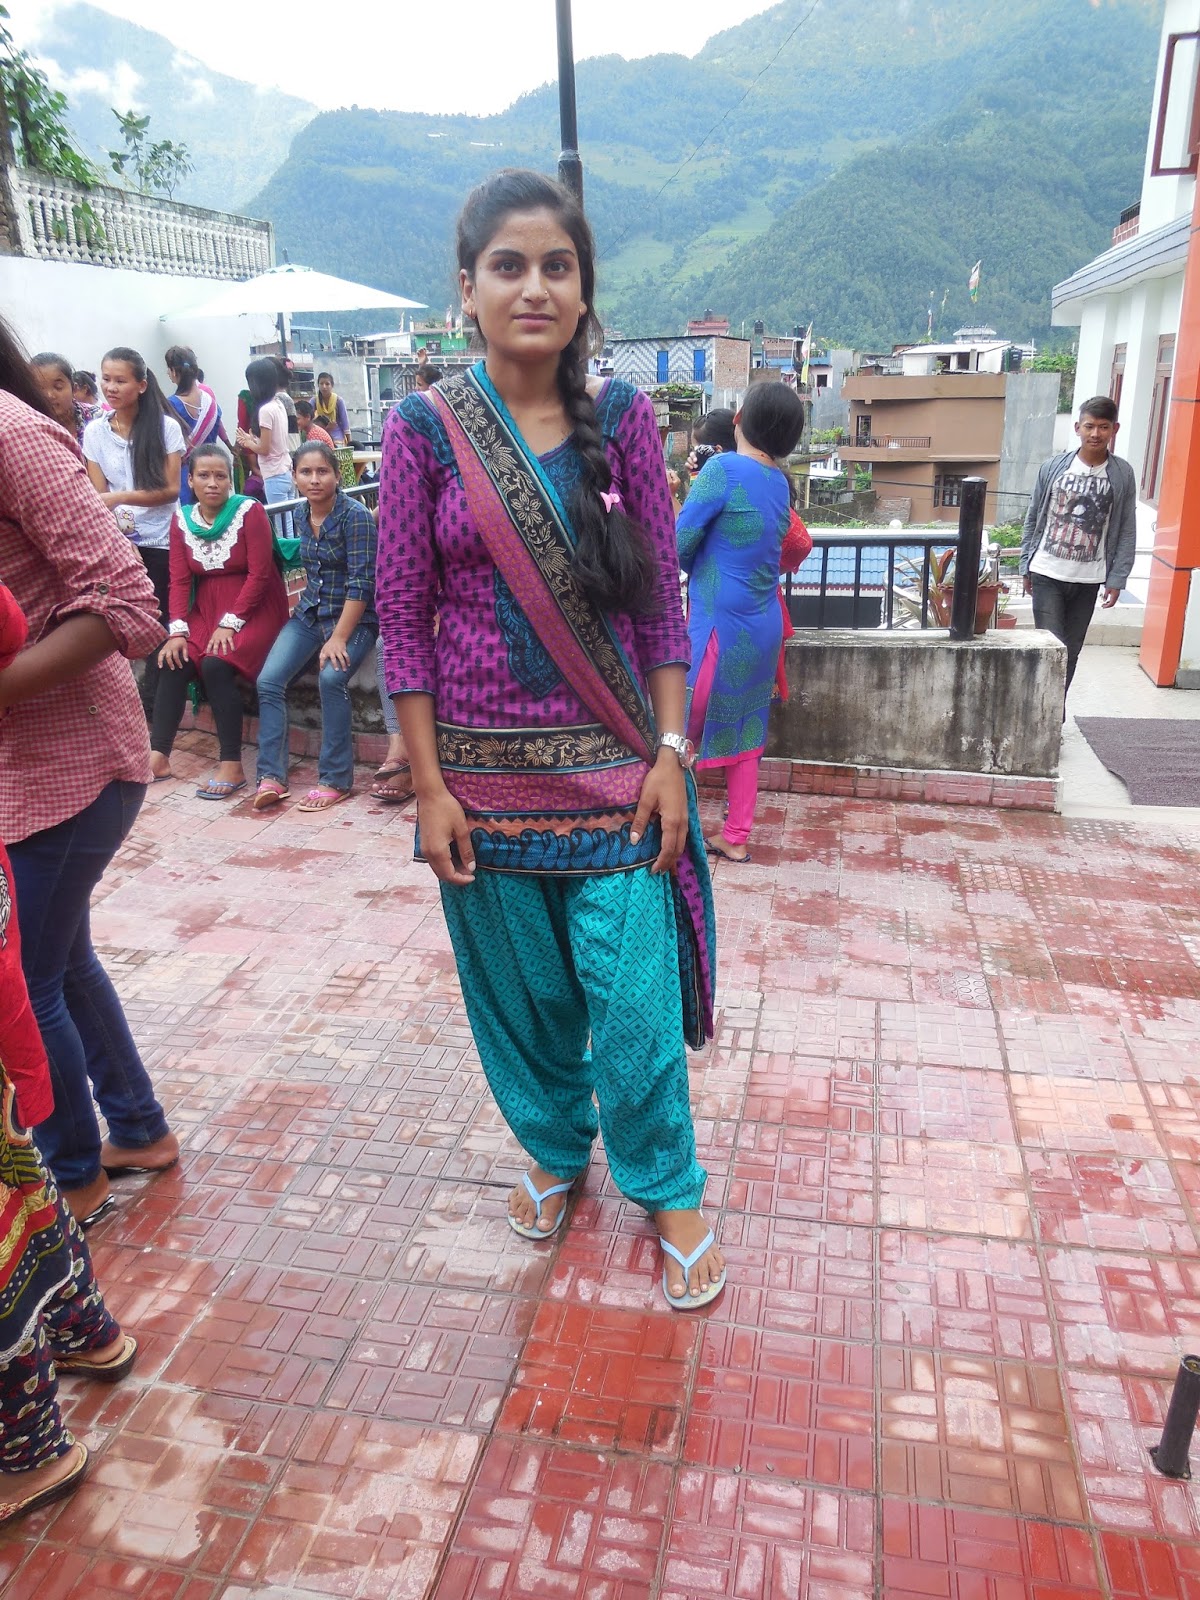 Ann Marcer in Nepal: What women wear